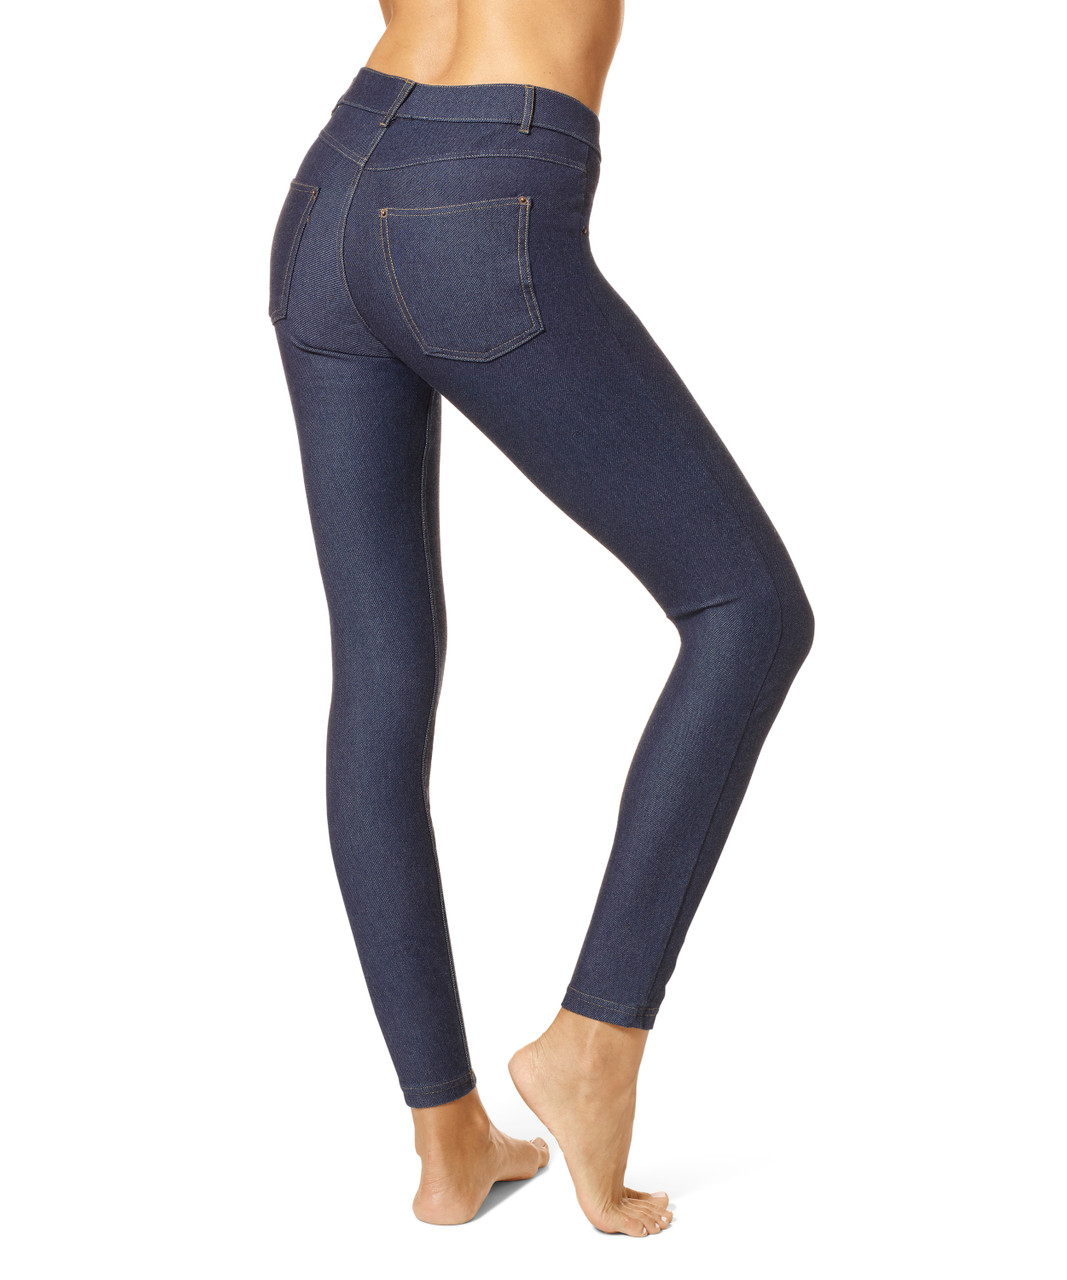 HUE Women's Jeggings & Tunic - Essential Denim Leggings - Stretchy Jeans  for Women - V Neck Legging Tee X-Large Legging Medium Wash